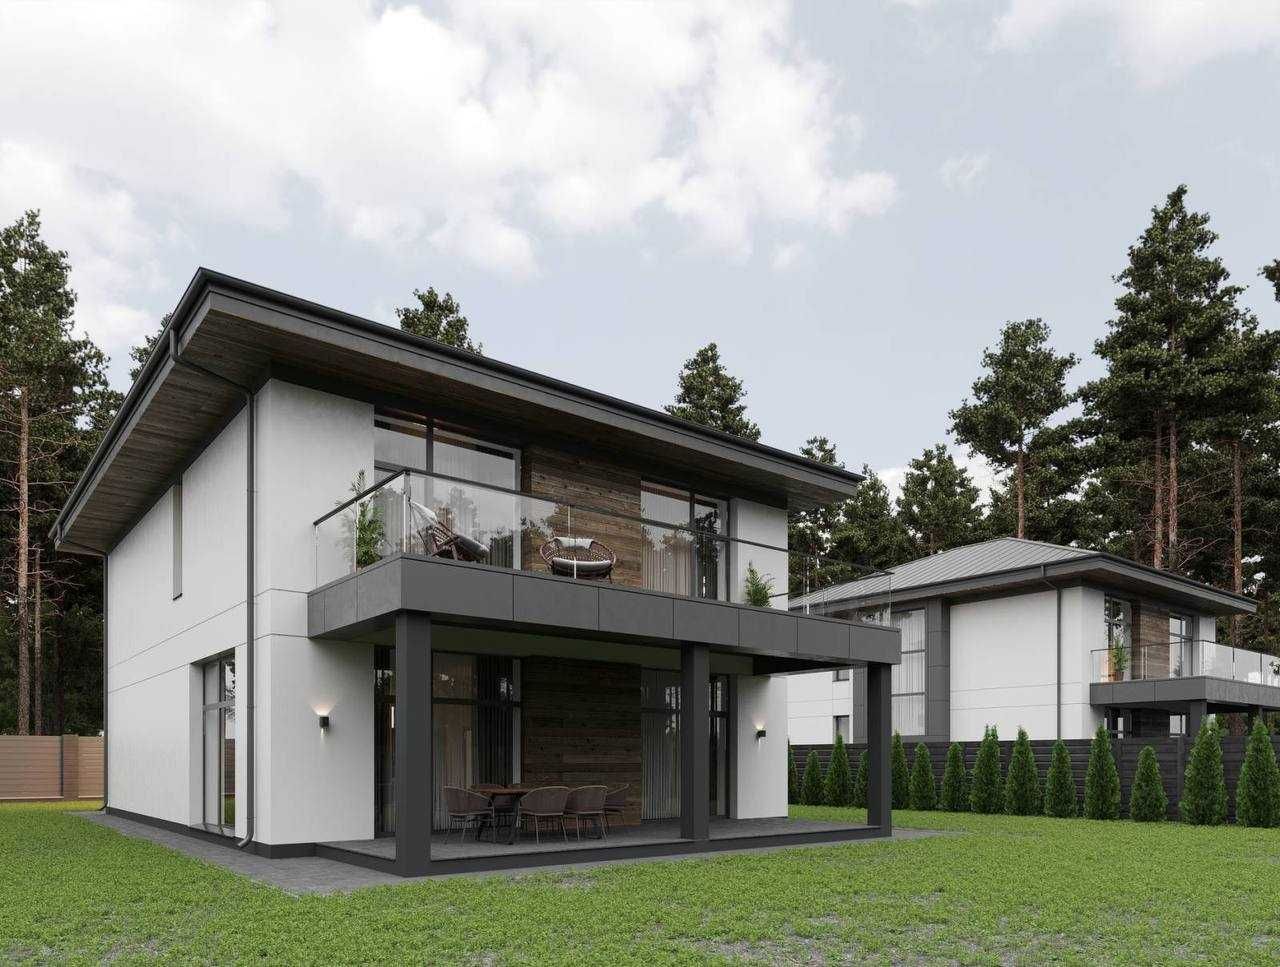 Новий будинок у стилі high-tech у Ходосівці у лісовій частині 240м2